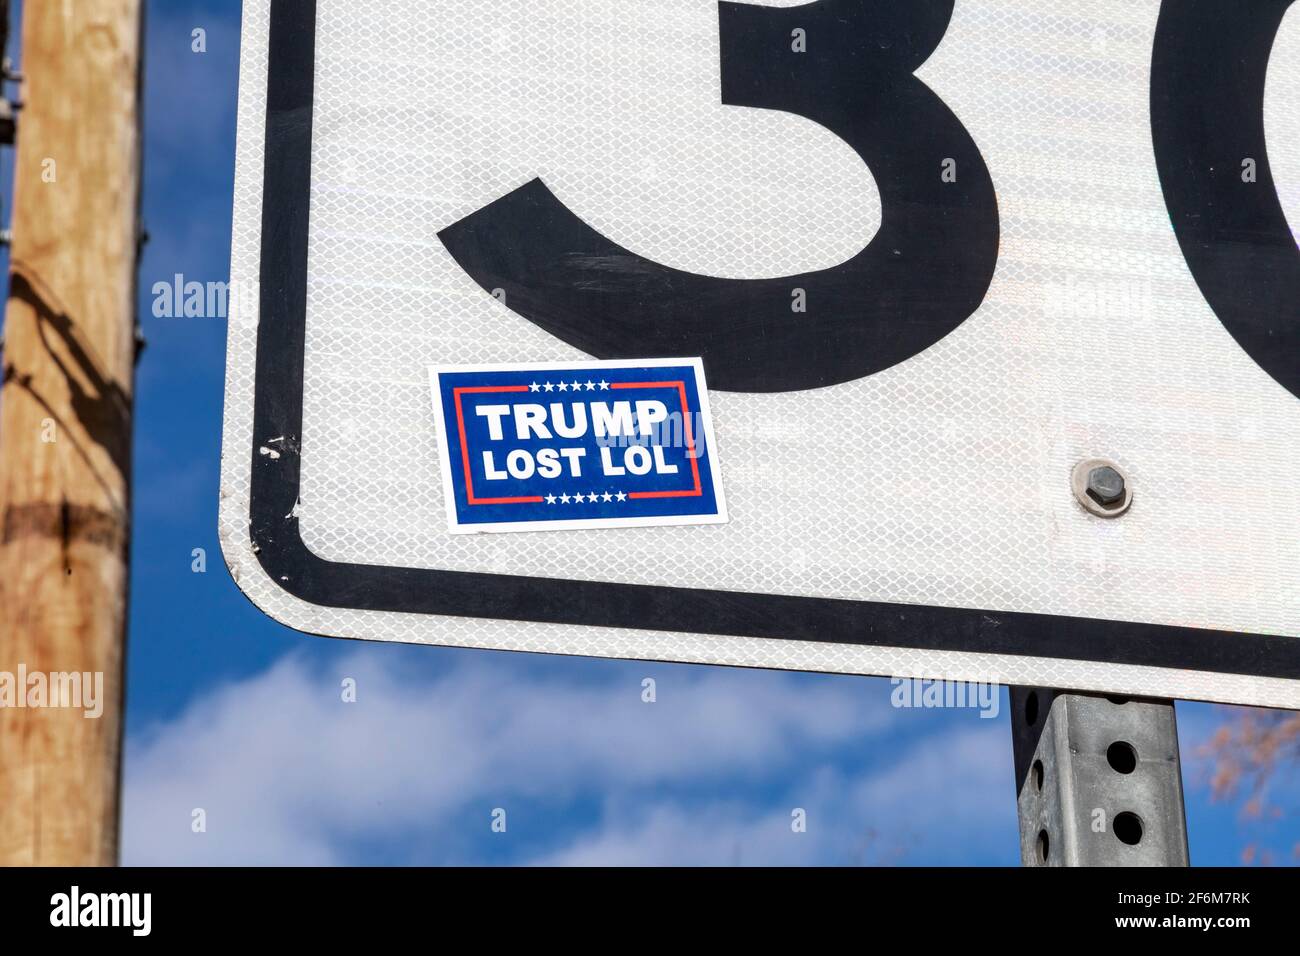 Wheat Ridge, Colorado - UN autocollant indiquant « Trump Lost LOL » sur un panneau de signalisation dans une banlieue de Denver. Banque D'Images